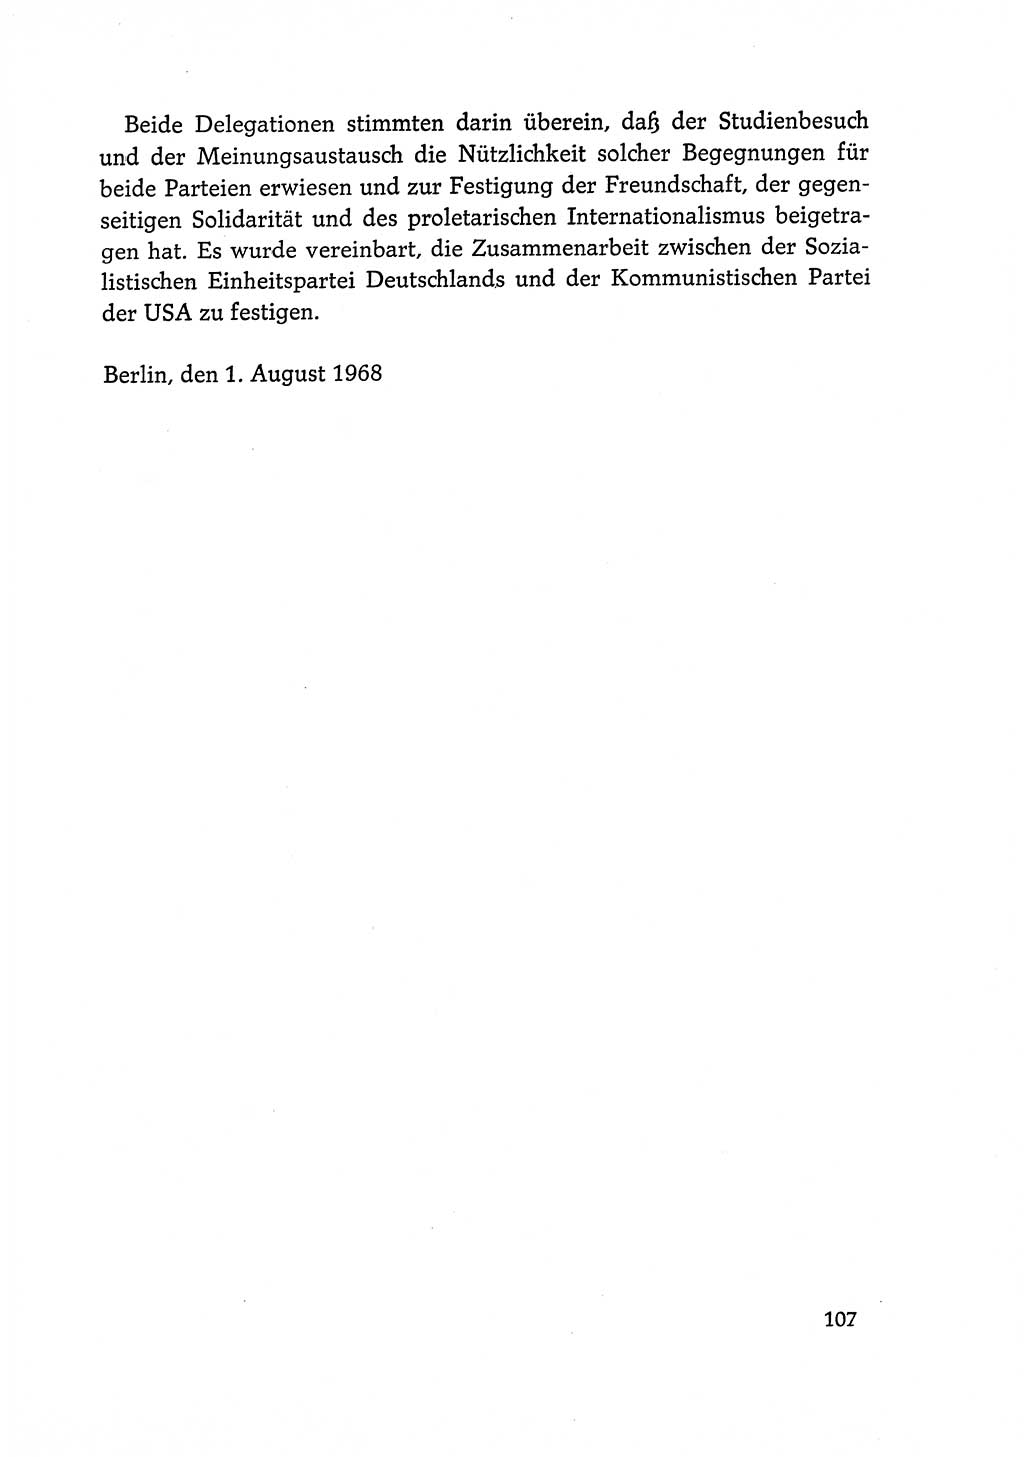 Dokumente der Sozialistischen Einheitspartei Deutschlands (SED) [Deutsche Demokratische Republik (DDR)] 1968-1969, Seite 107 (Dok. SED DDR 1968-1969, S. 107)